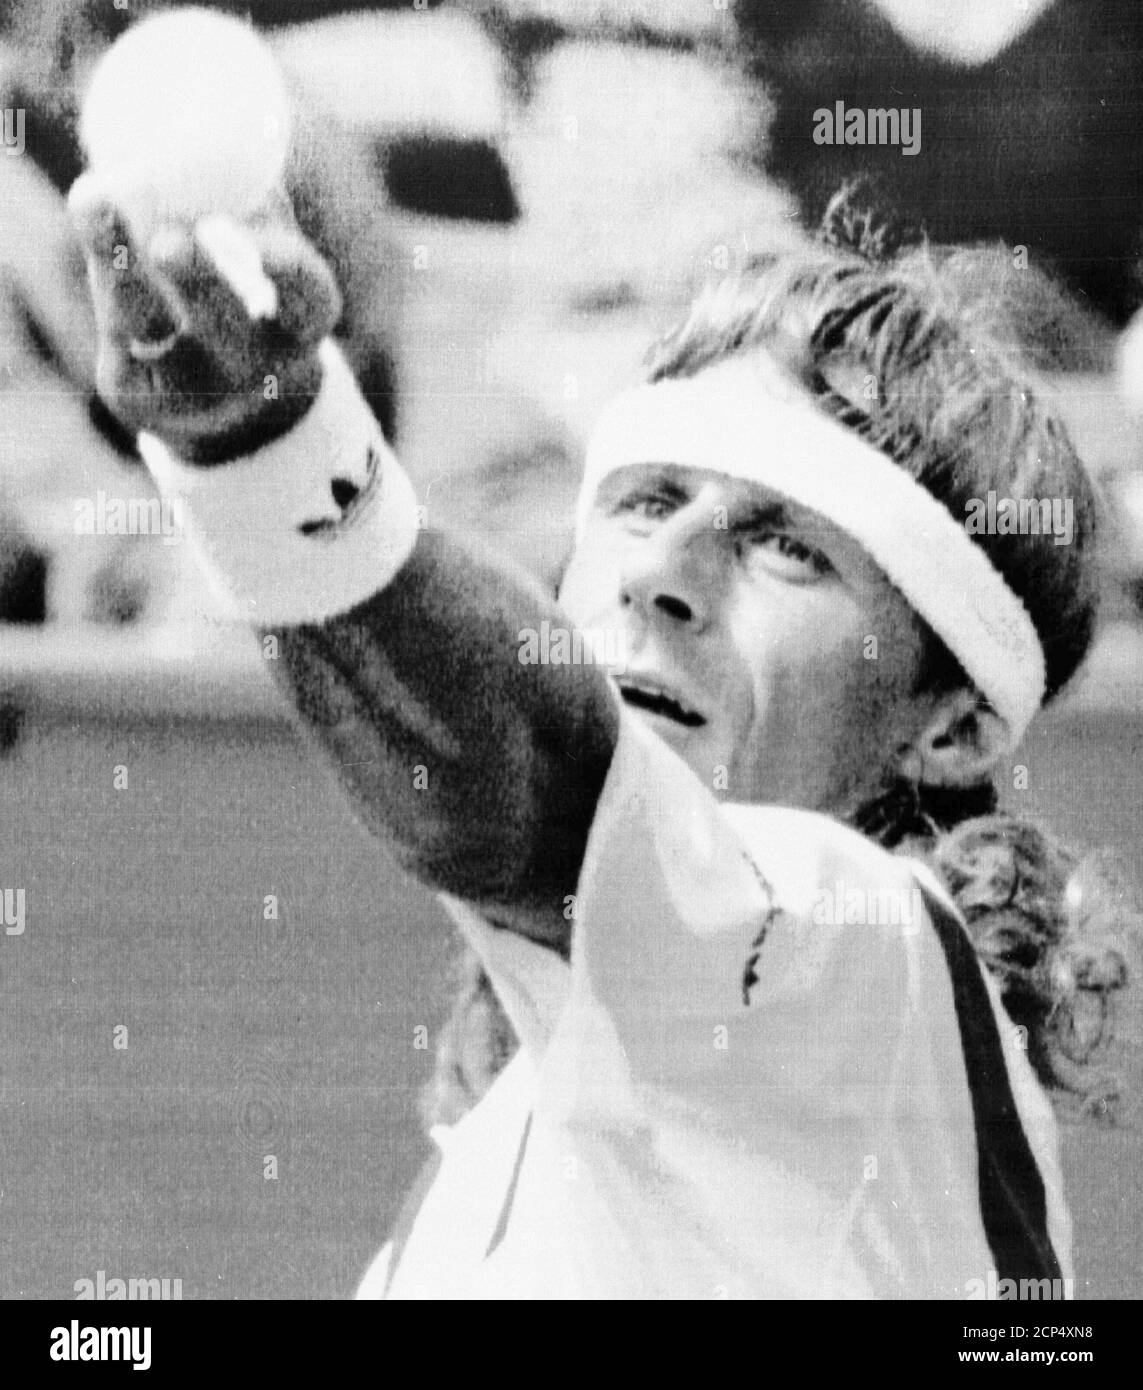 Le joueur de tennis suédois Bjorn Borg regarde le ballon lors de son  deuxième match de retour contre Olivier Delaître de France à Nice le 14  avril 1992. Borg a perdu au